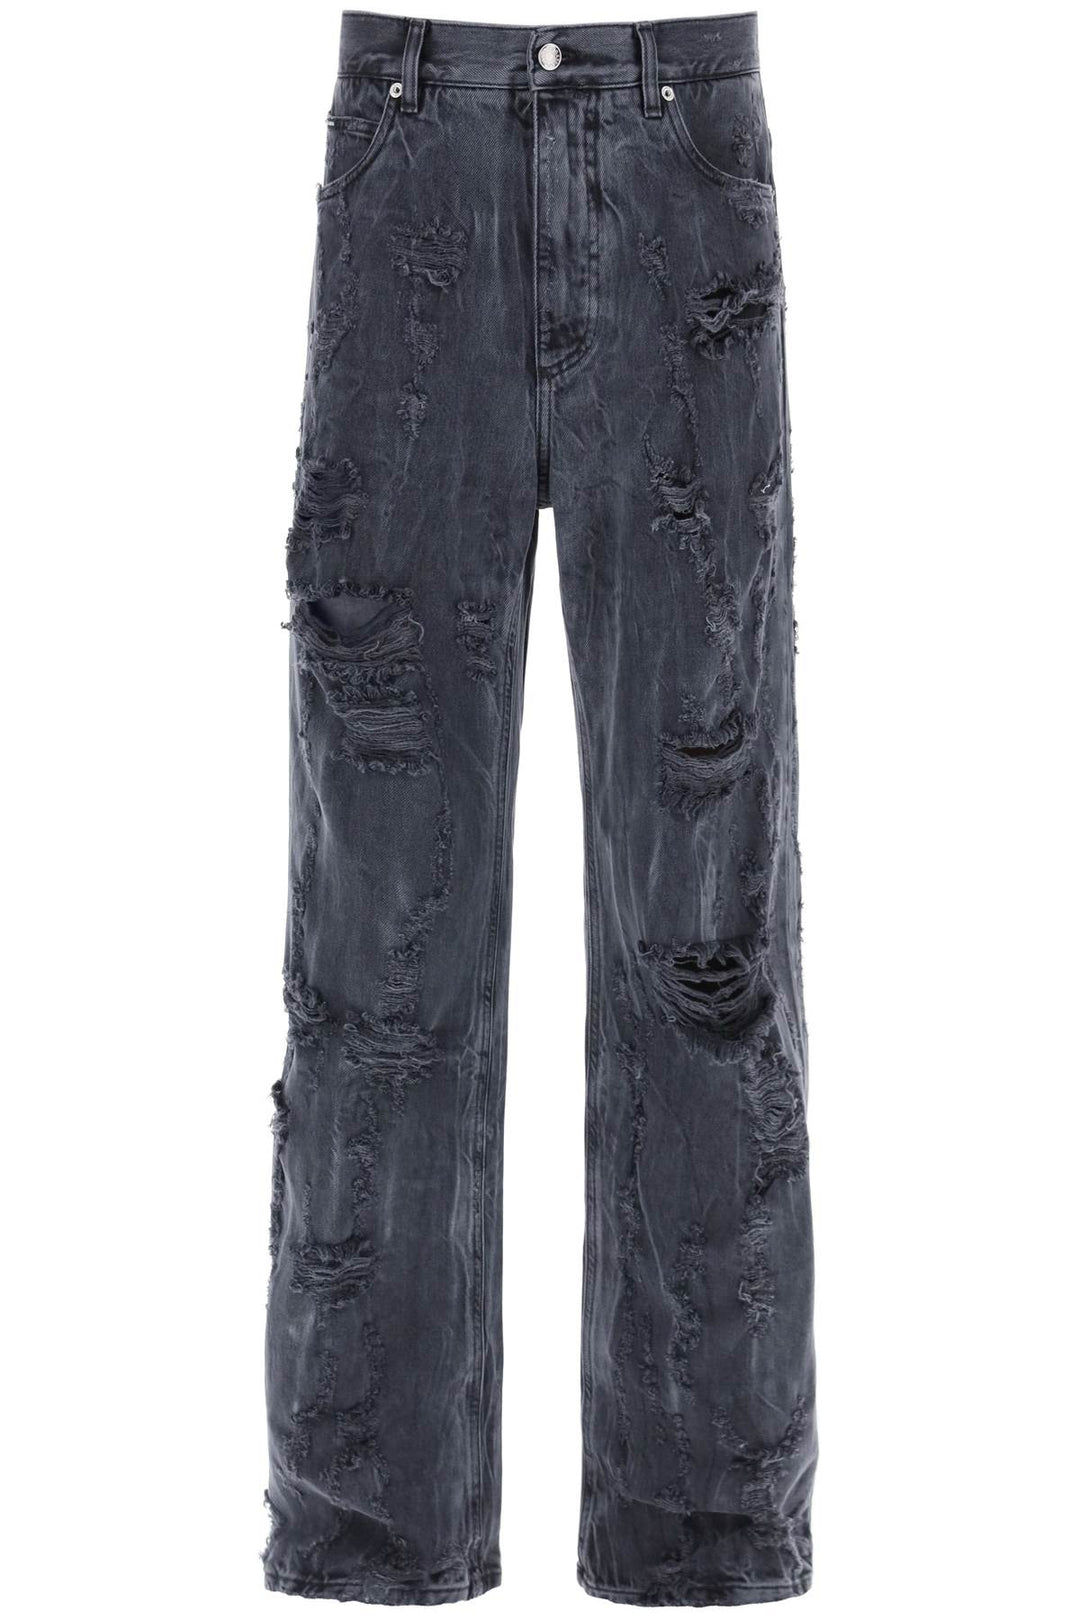 Dolce & Gabbana Destroyed Effect Jeans   Grigio